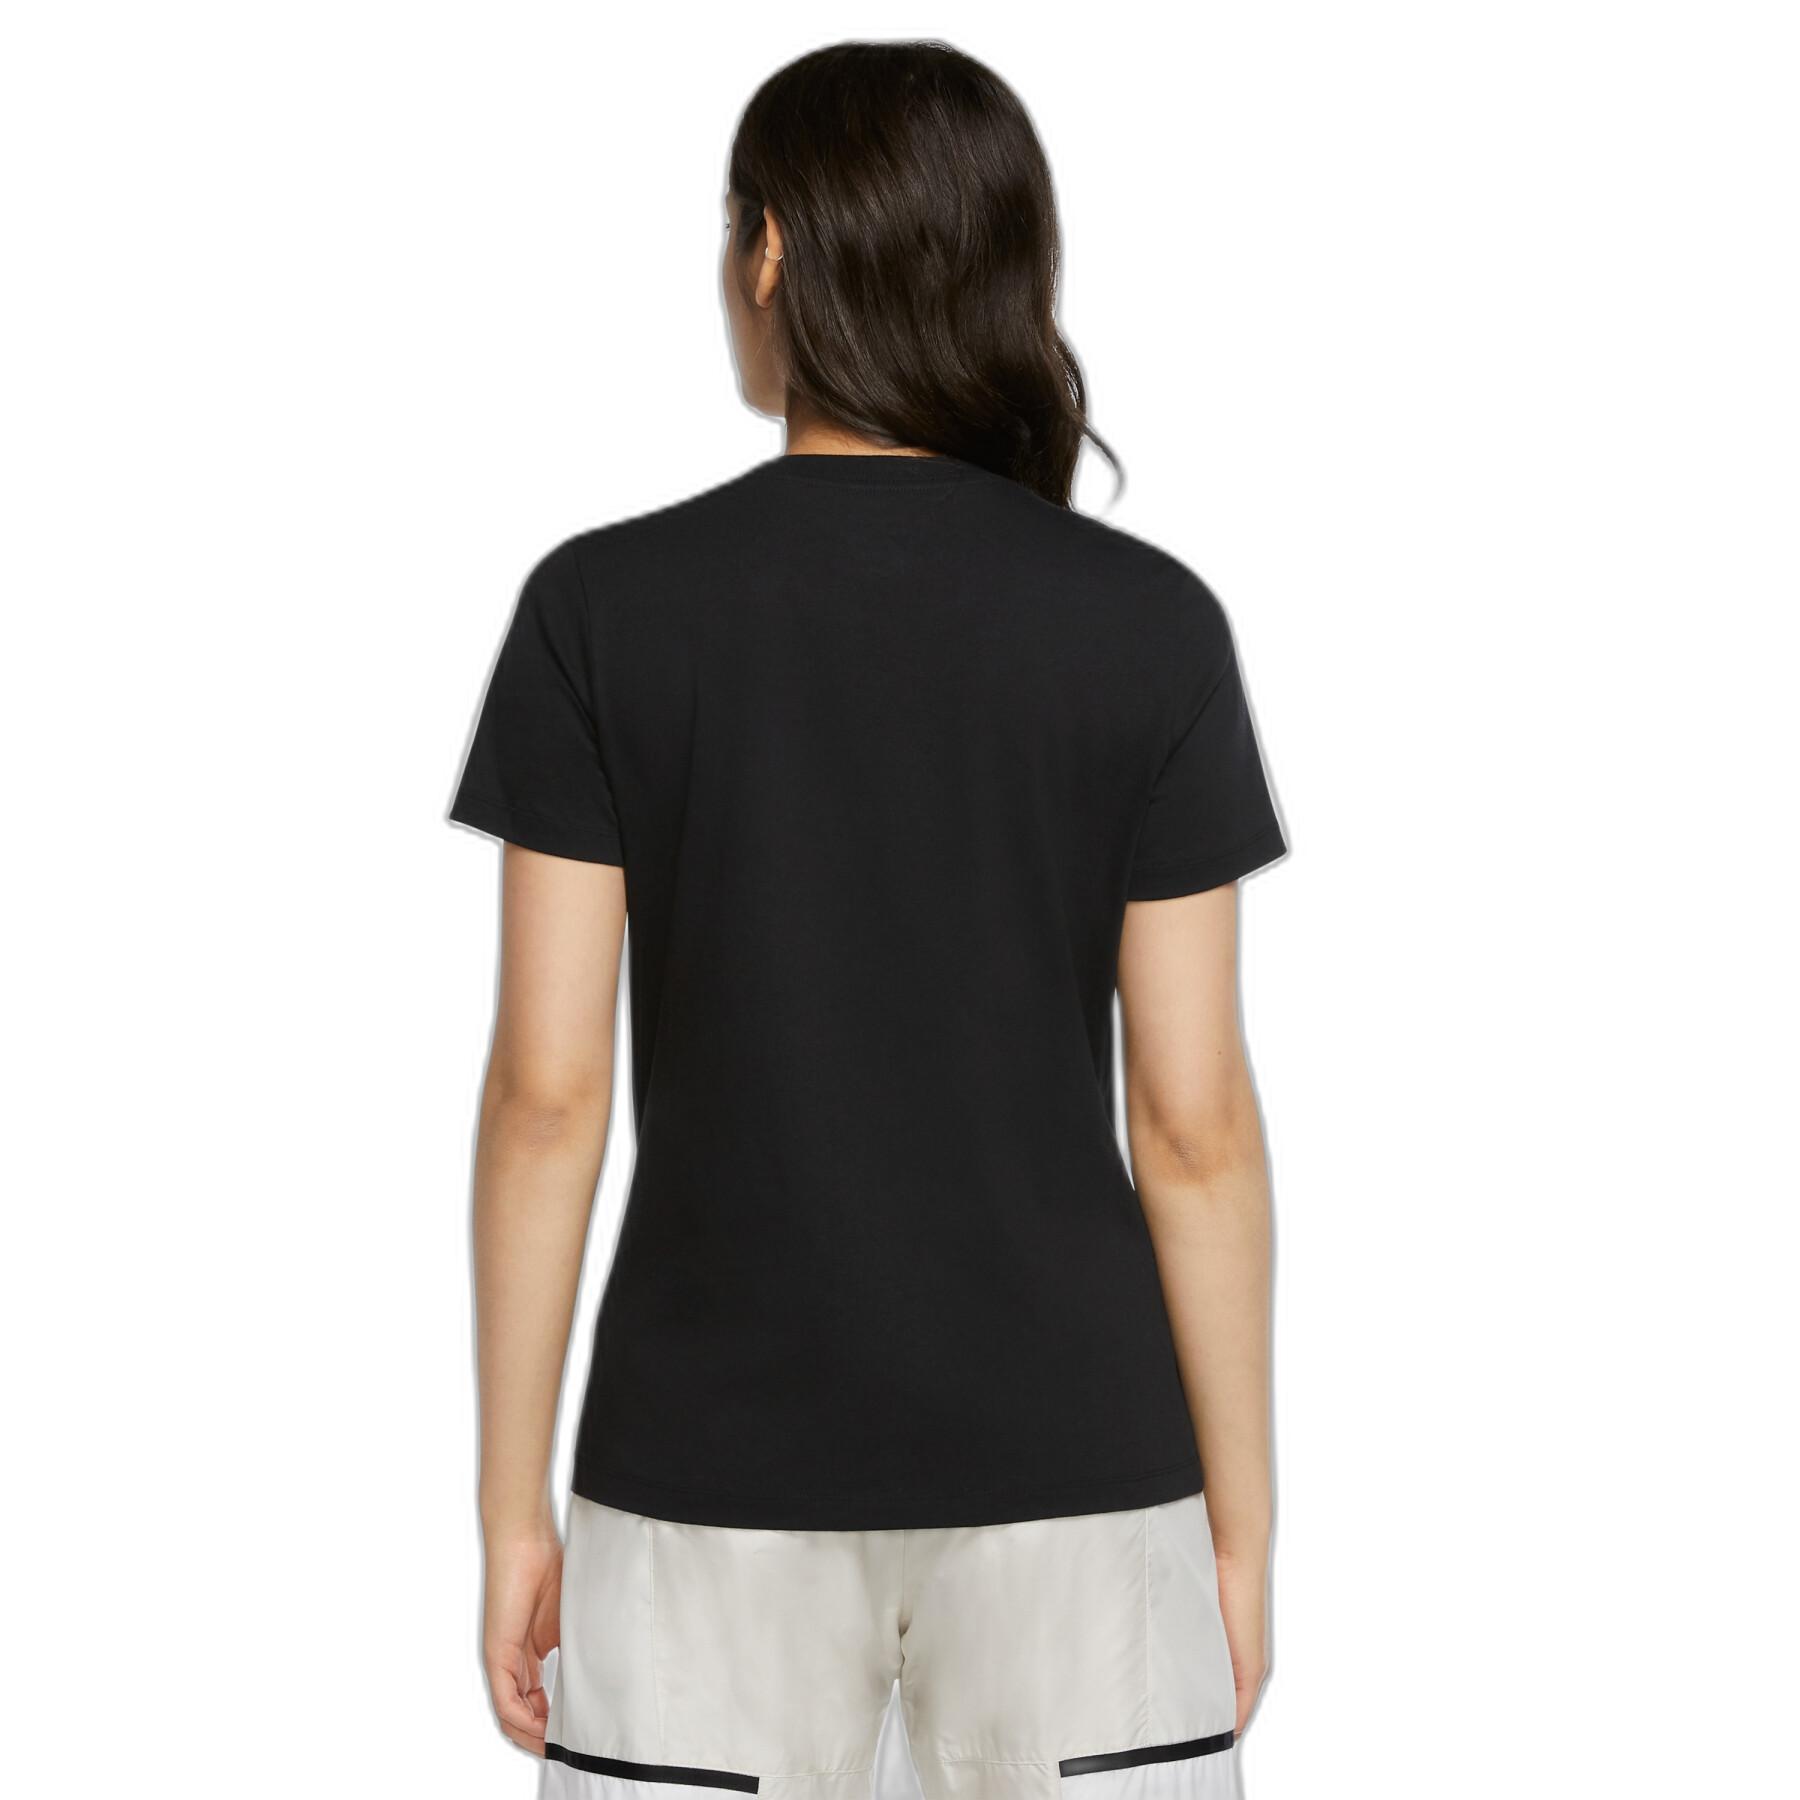 Women's T-shirt Nike Sportswear